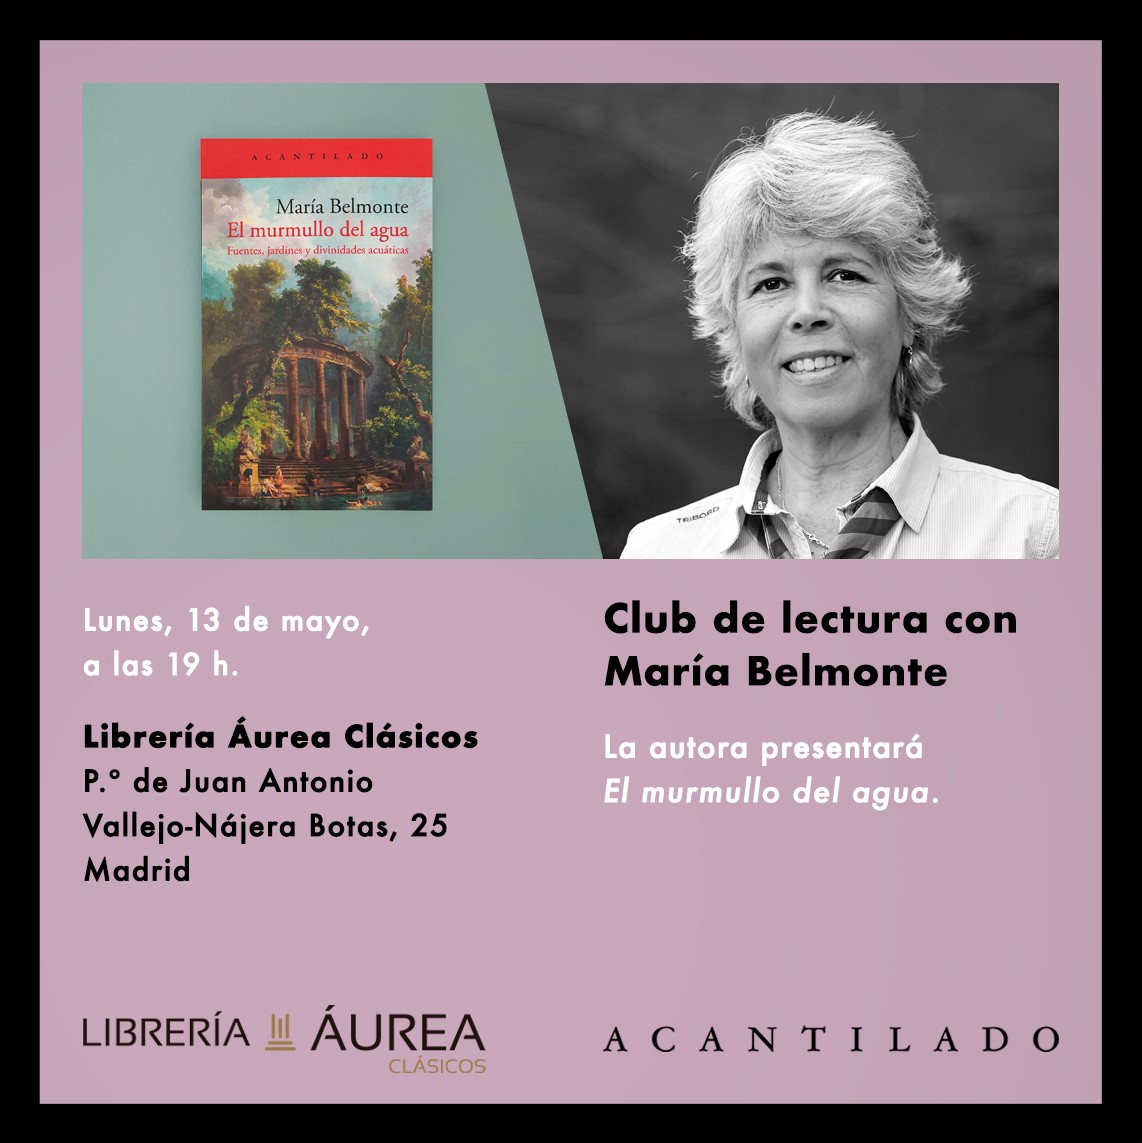 #ClubdeLecturaÁureo Presentamos nuestro primer club de lectura. Comenzaremos con 'El murmullo del agua' de María Belmonte. Será una charla amena donde los lectores podréis compartir vuestras impresiones entre vosotros y con la propia autora, quien participará en el club.